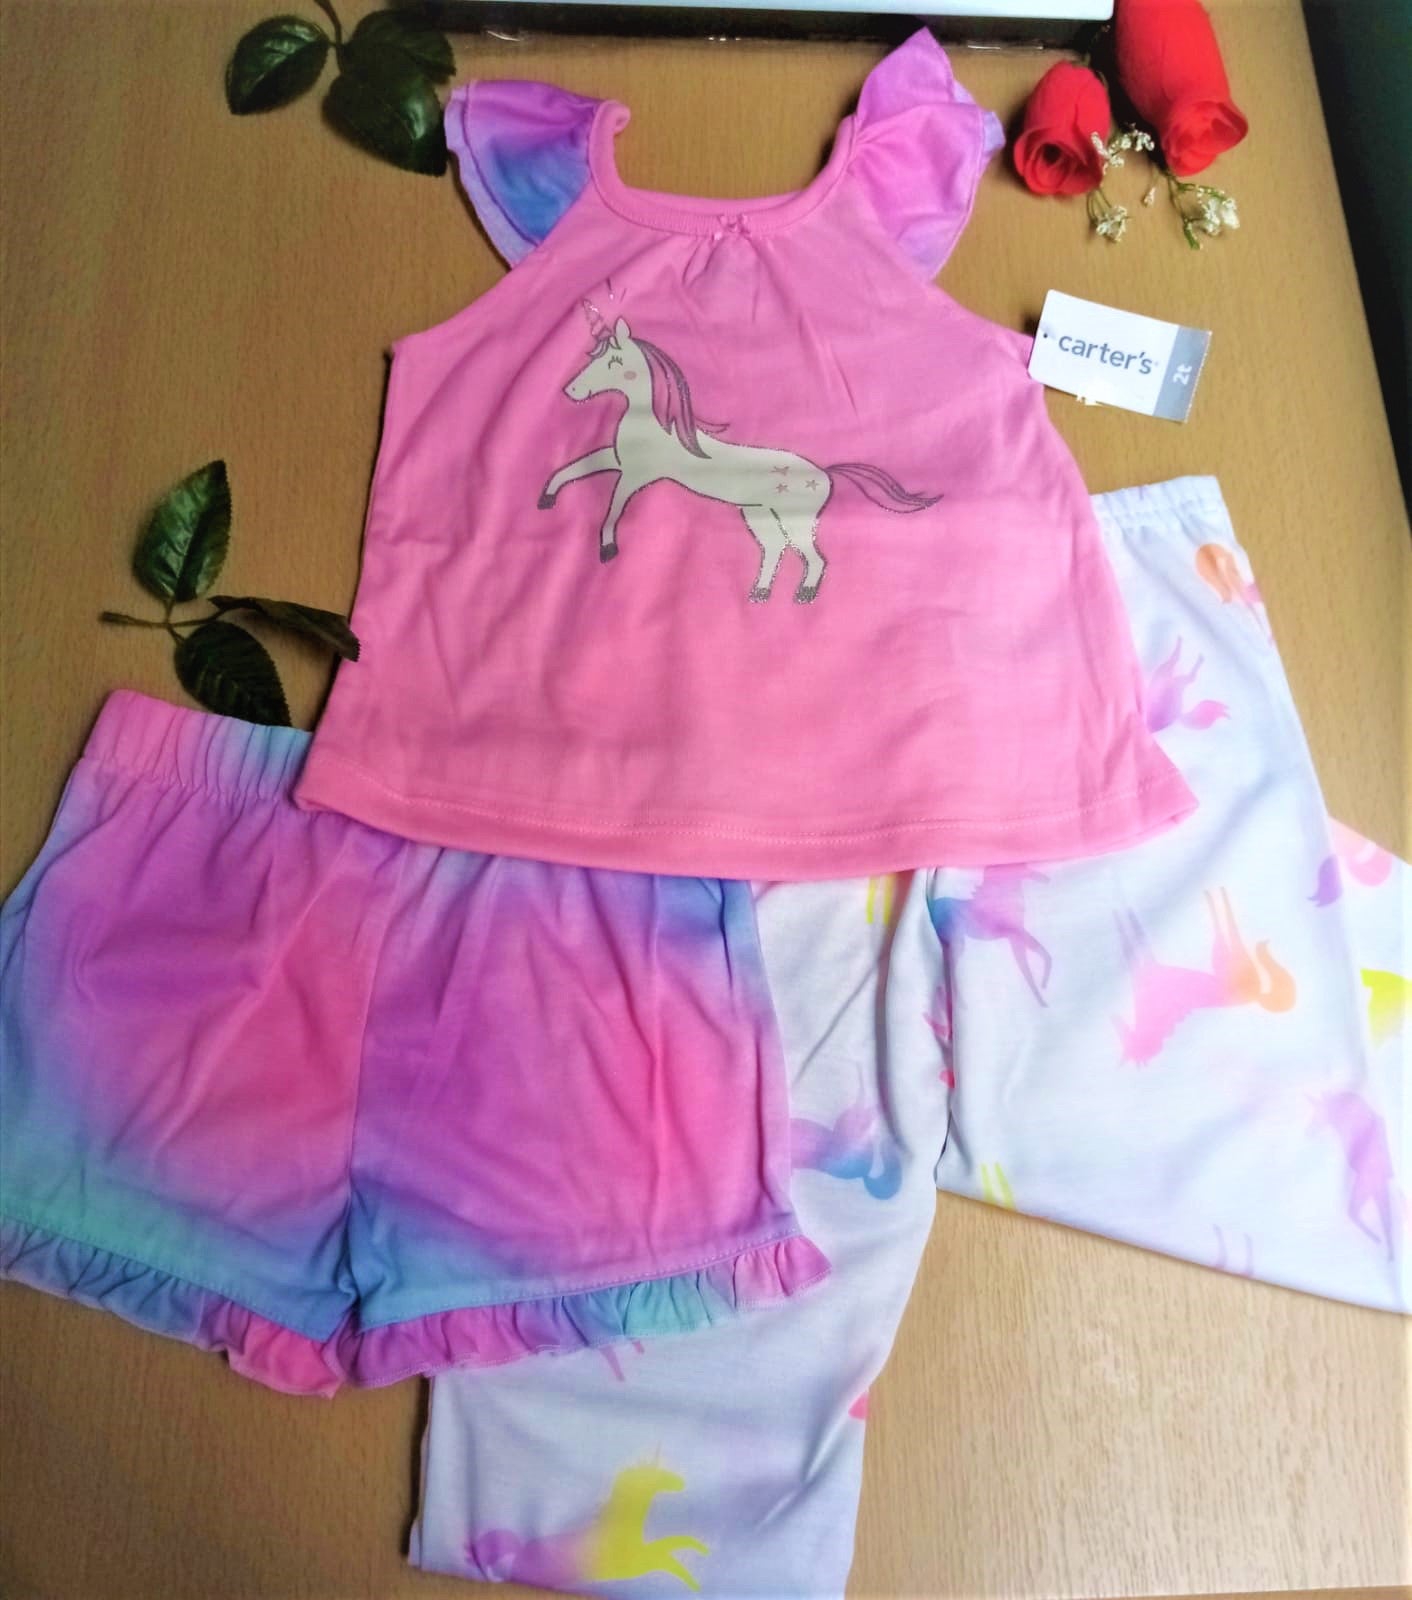 Pijamas holgados de 3 piezas "Unicornio", talla 2T.